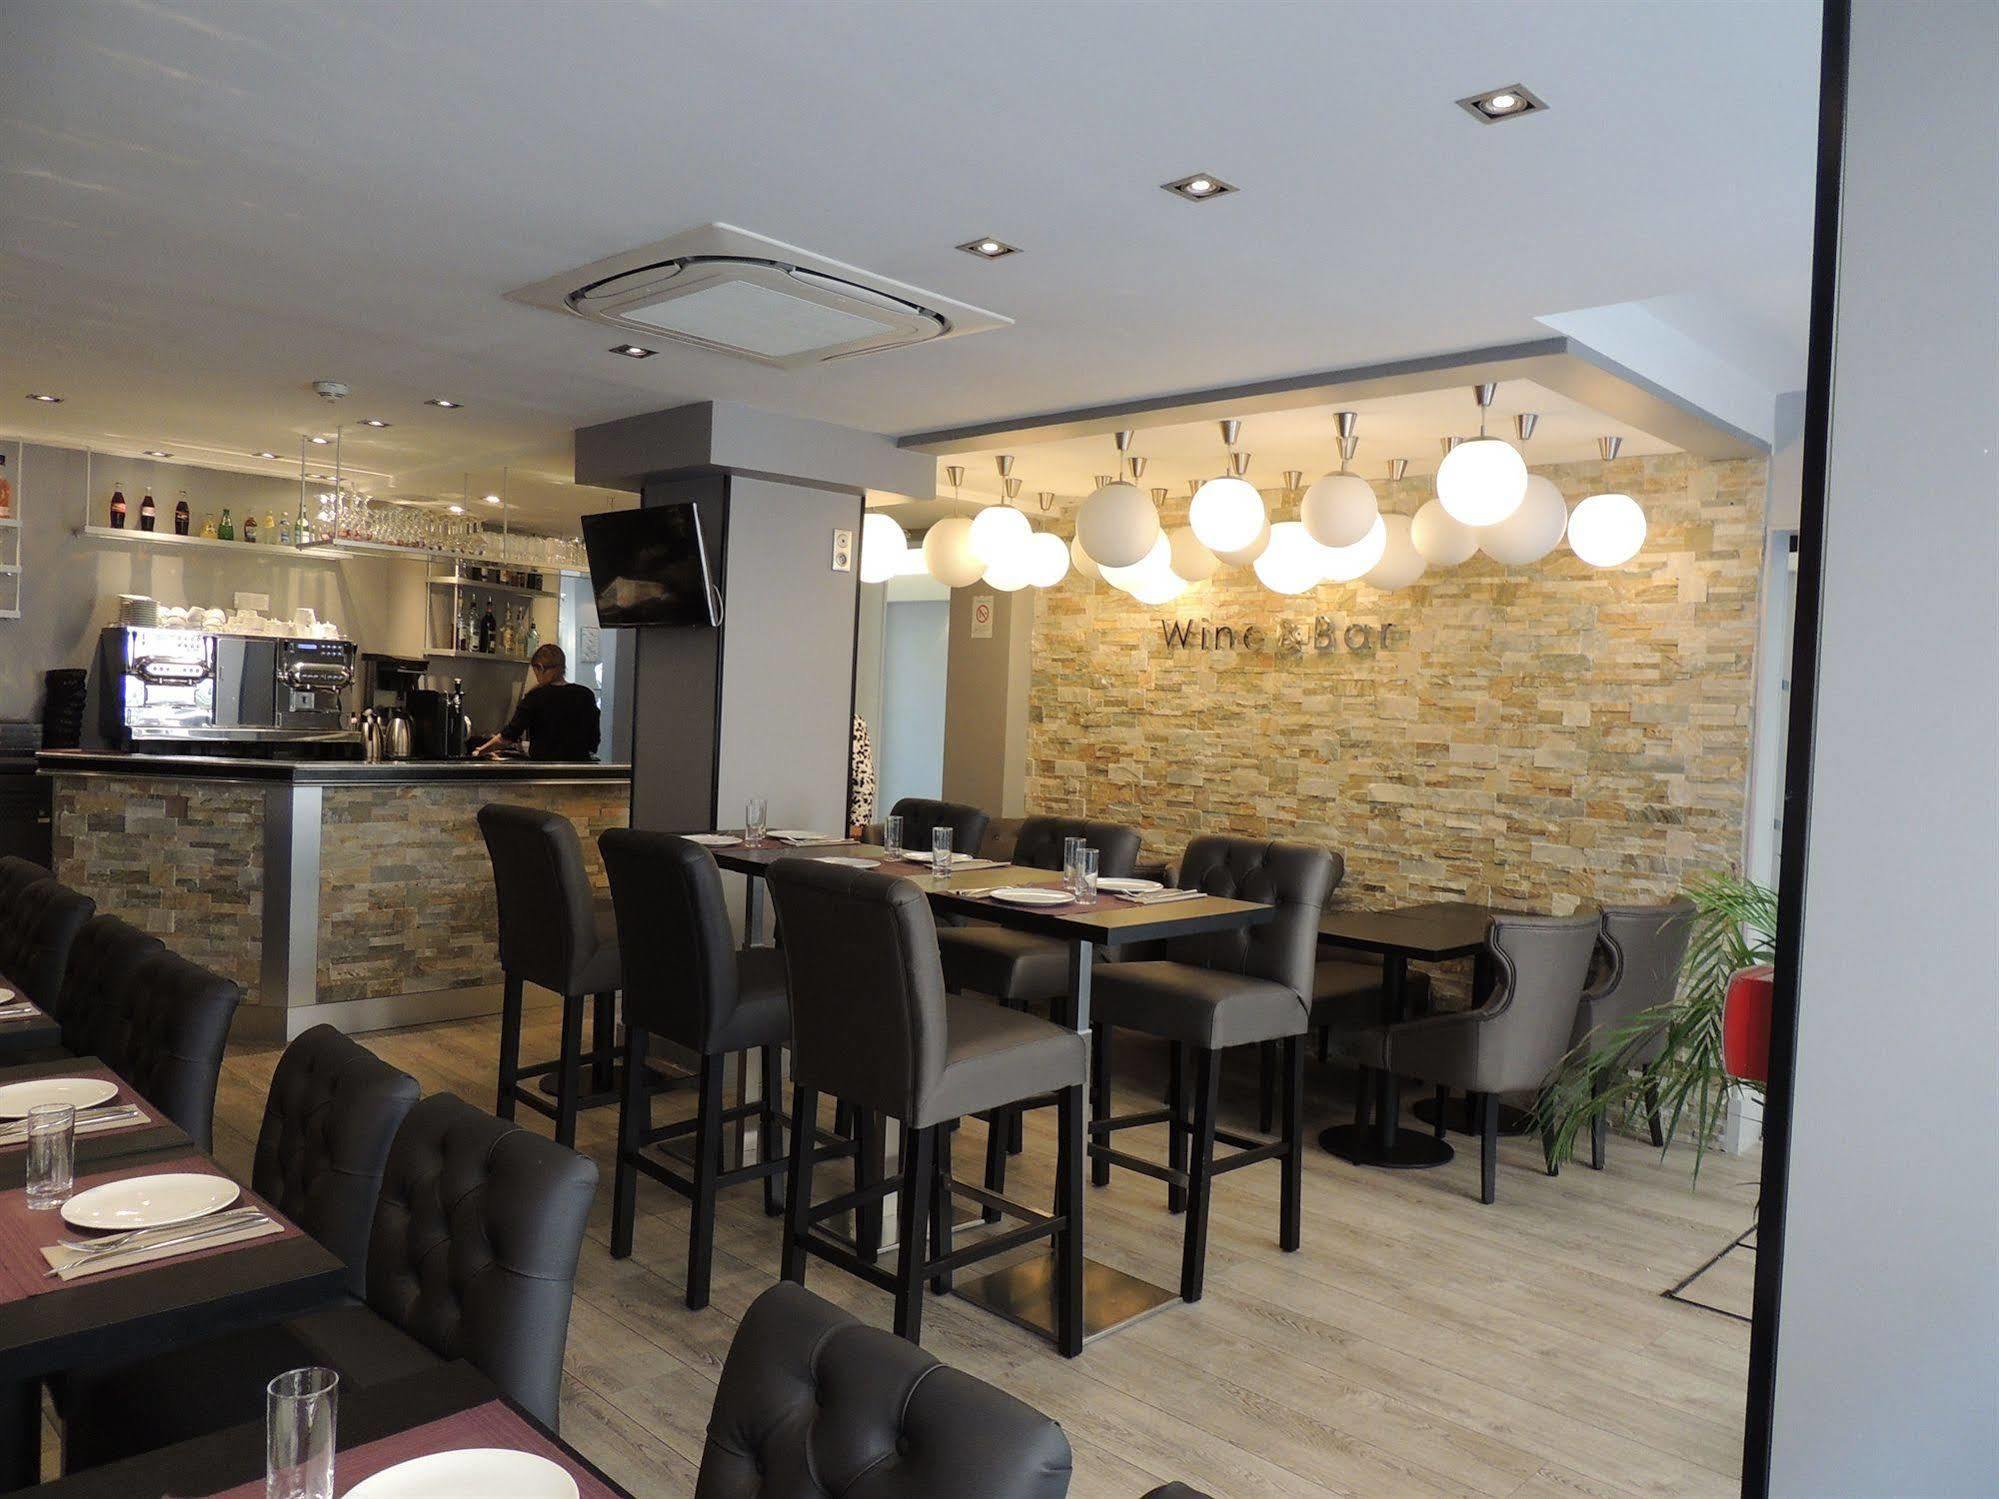 BIG BELL GRAND CAFE, The Hague - Menu, Prices & Restaurant Reviews -  Tripadvisor